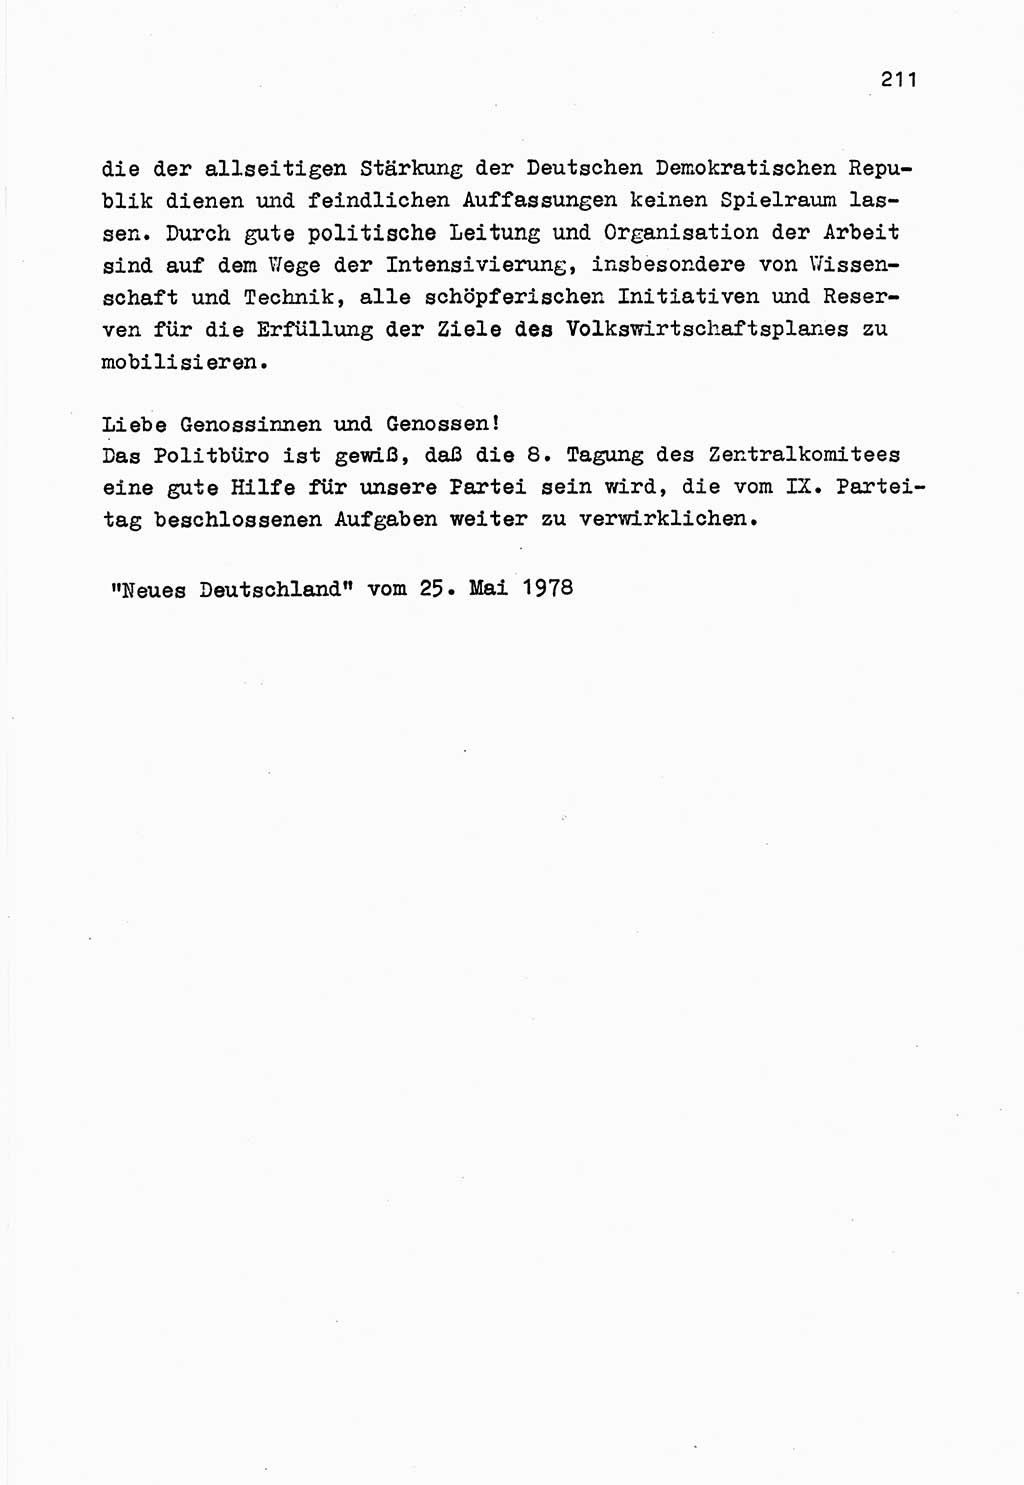 Zu Fragen der Parteiarbeit [Sozialistische Einheitspartei Deutschlands (SED) Deutsche Demokratische Republik (DDR)] 1979, Seite 211 (Fr. PA SED DDR 1979, S. 211)